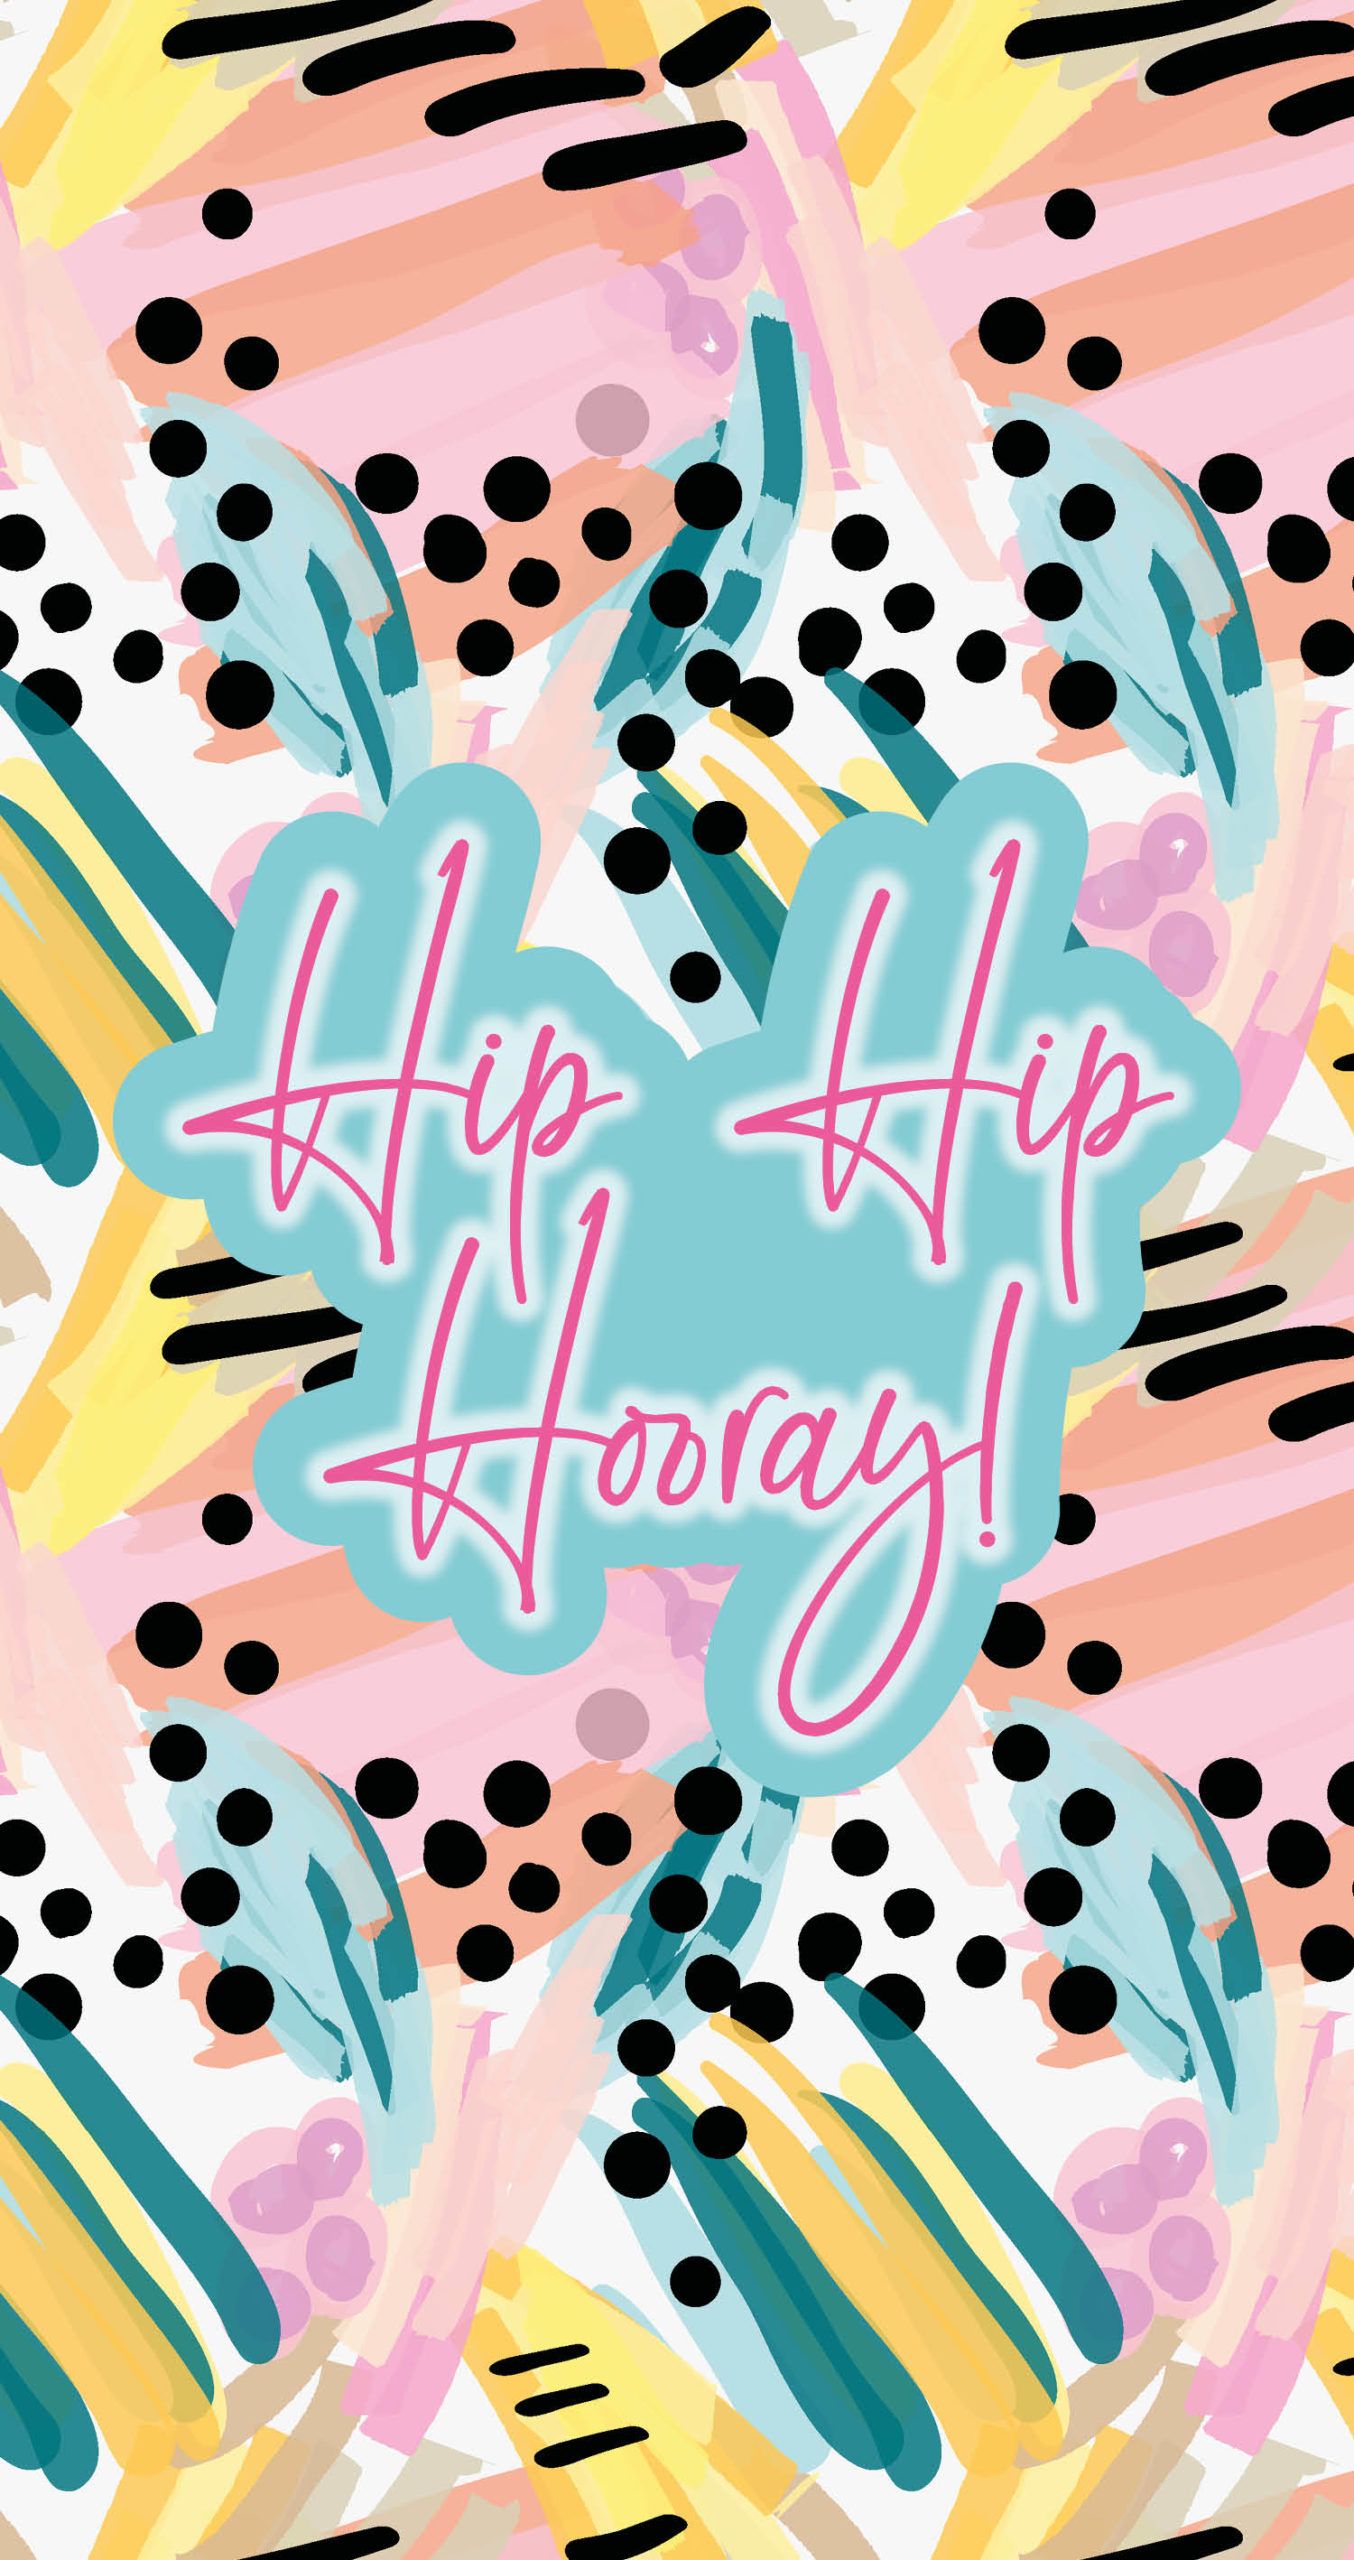 Hip hop hooray - digital printable art - August